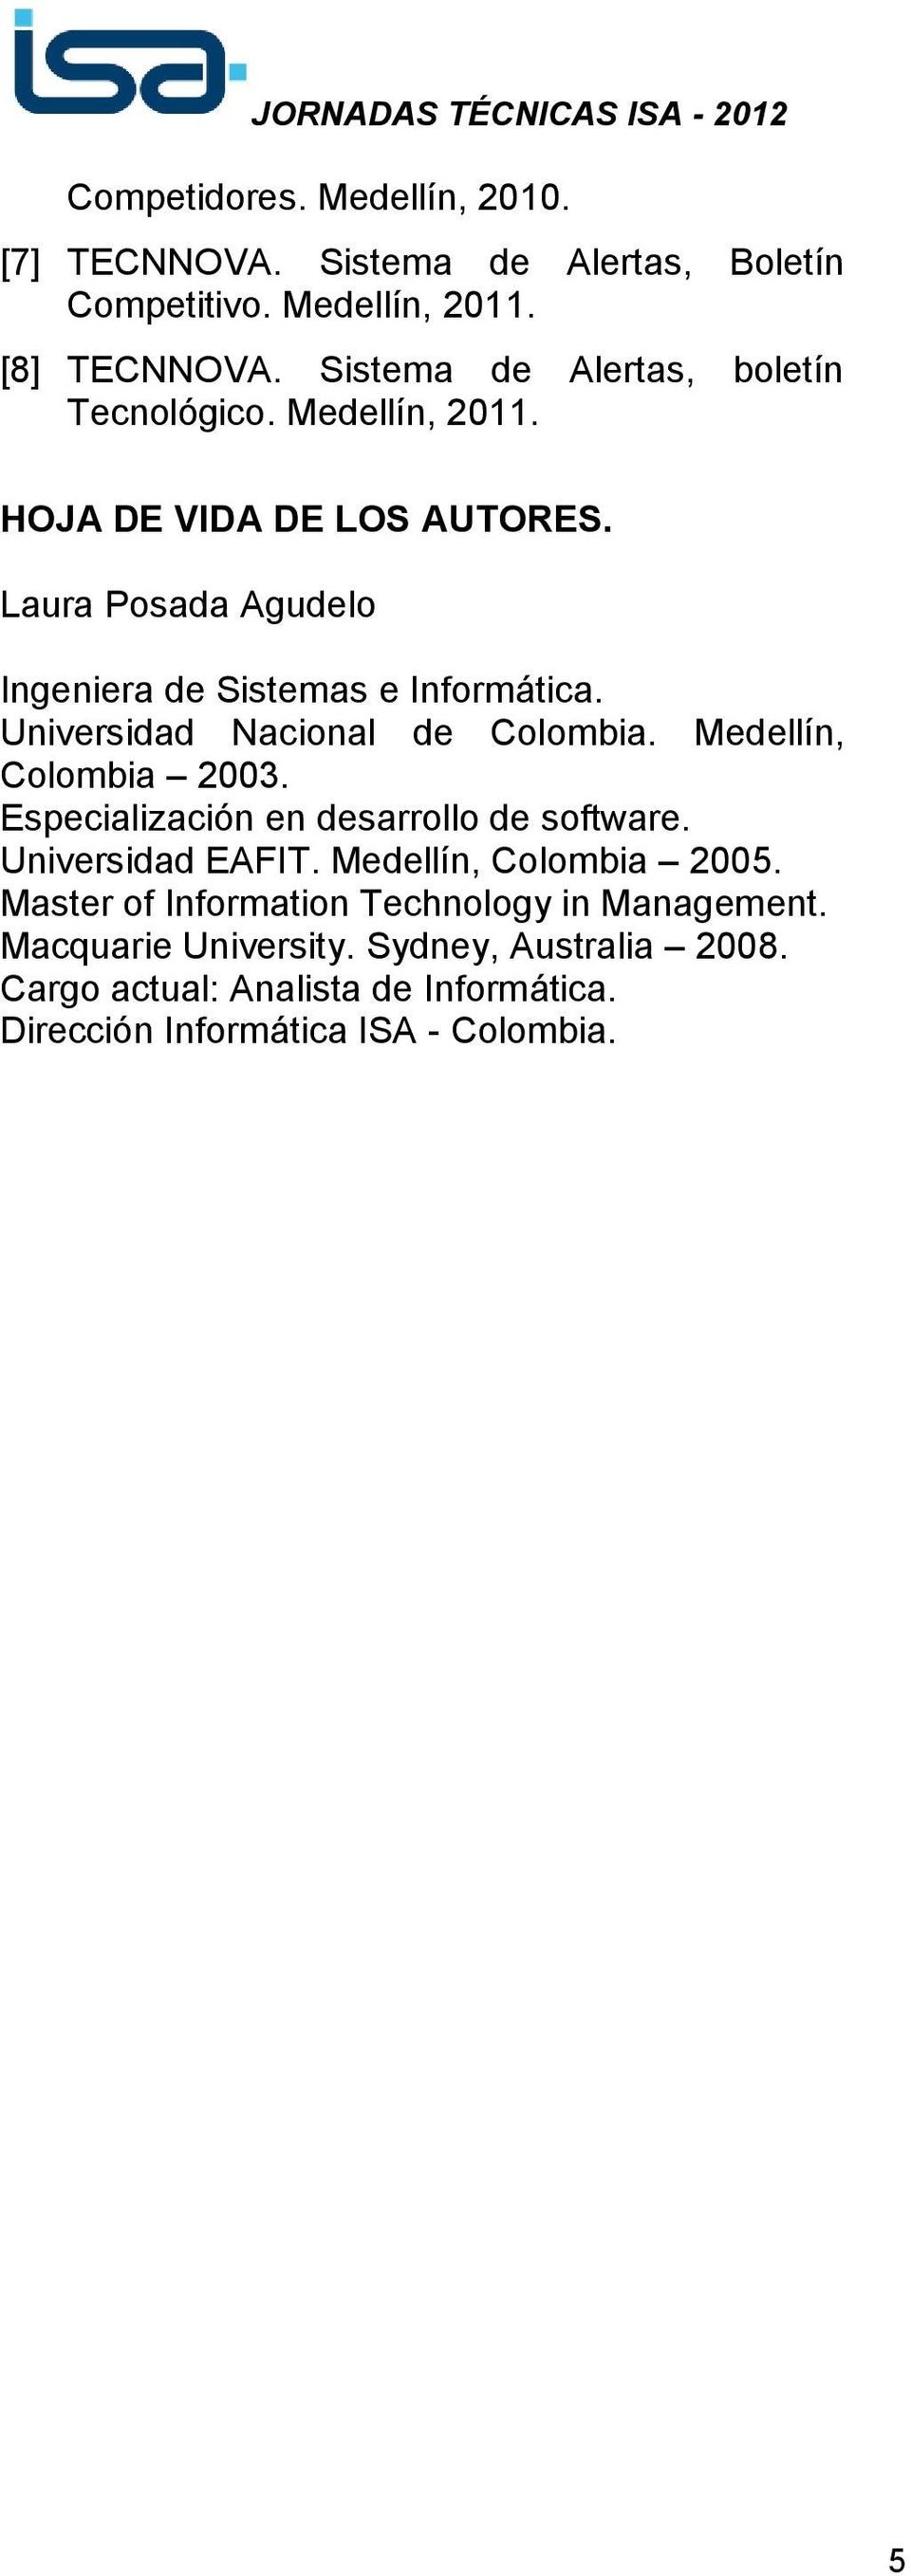 Universidad Nacional de Colombia. Medellín, Colombia 2003. Especialización en desarrollo de software. Universidad EAFIT. Medellín, Colombia 2005.